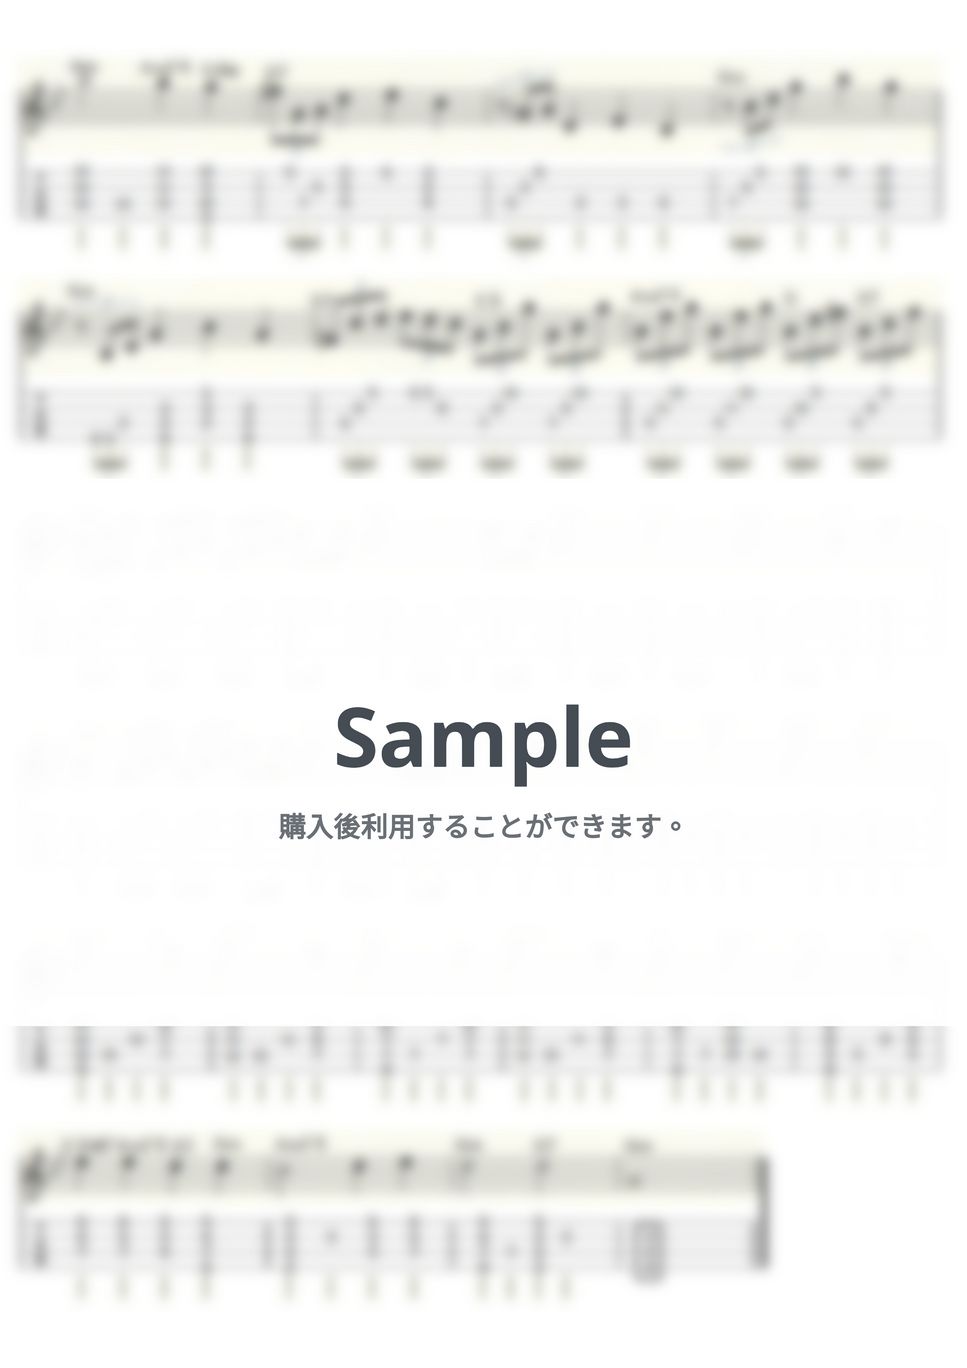 ベートーヴェン - 月光 (ｳｸﾚﾚｿﾛ/Low-G/中級) by ukulelepapa